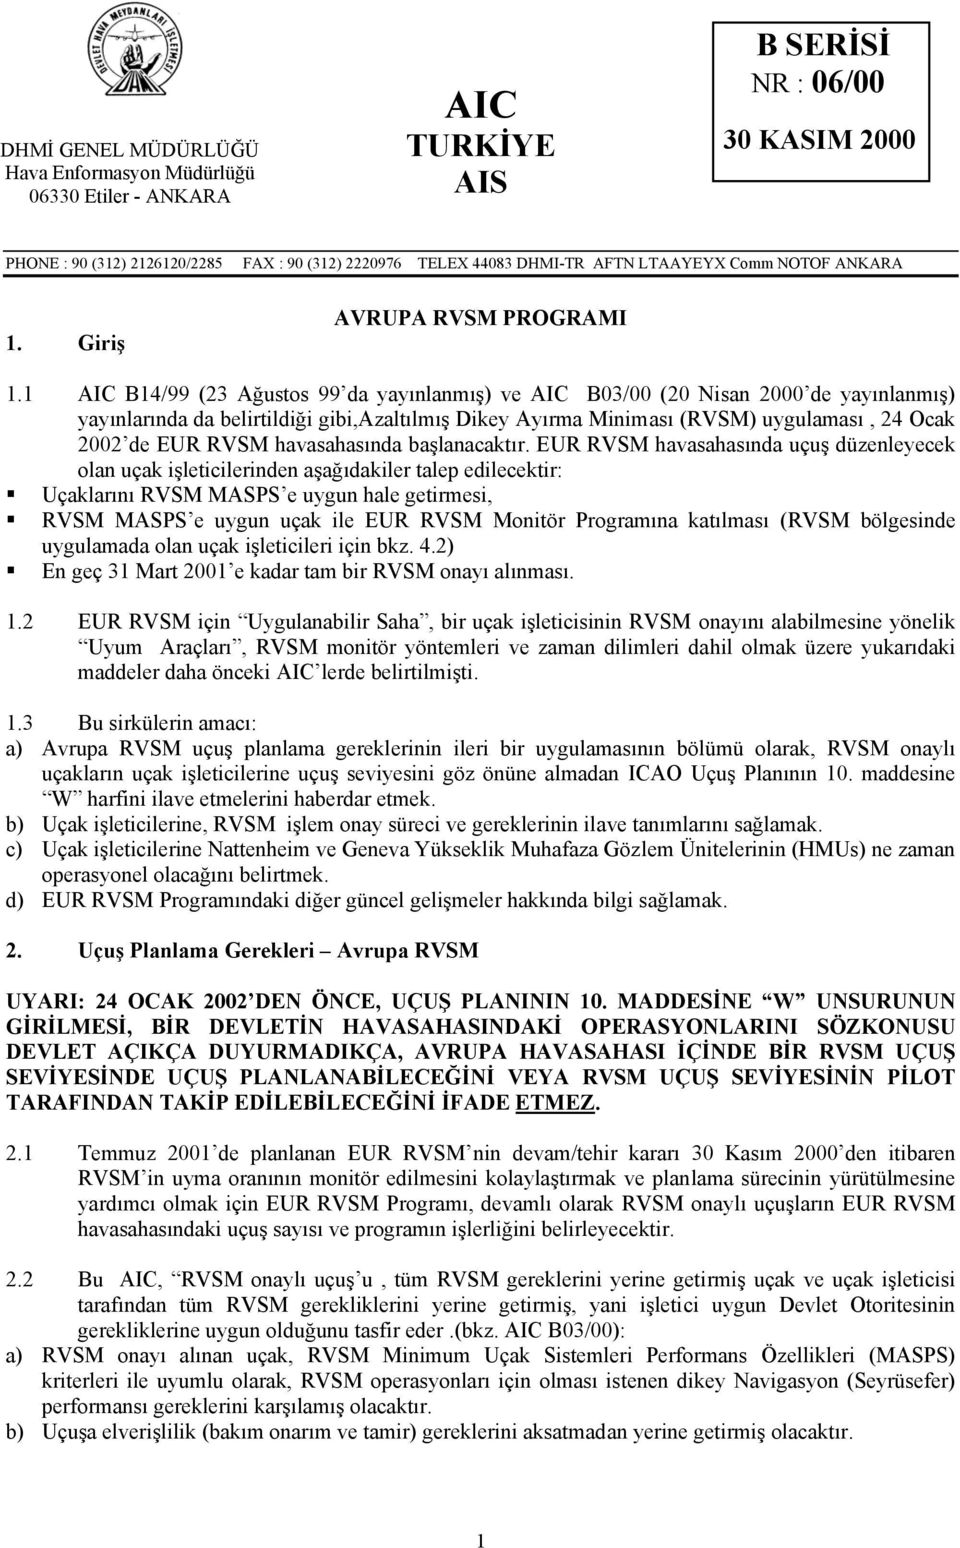 1 AIC B14/99 (23 Ağustos 99 da yayınlanmış) ve AIC B03/00 (20 Nisan 2000 de yayınlanmış) yayınlarında da belirtildiği gibi,azaltılmış Dikey Ayırma Miniması (RVSM) uygulaması, 24 Ocak 2002 de EUR RVSM